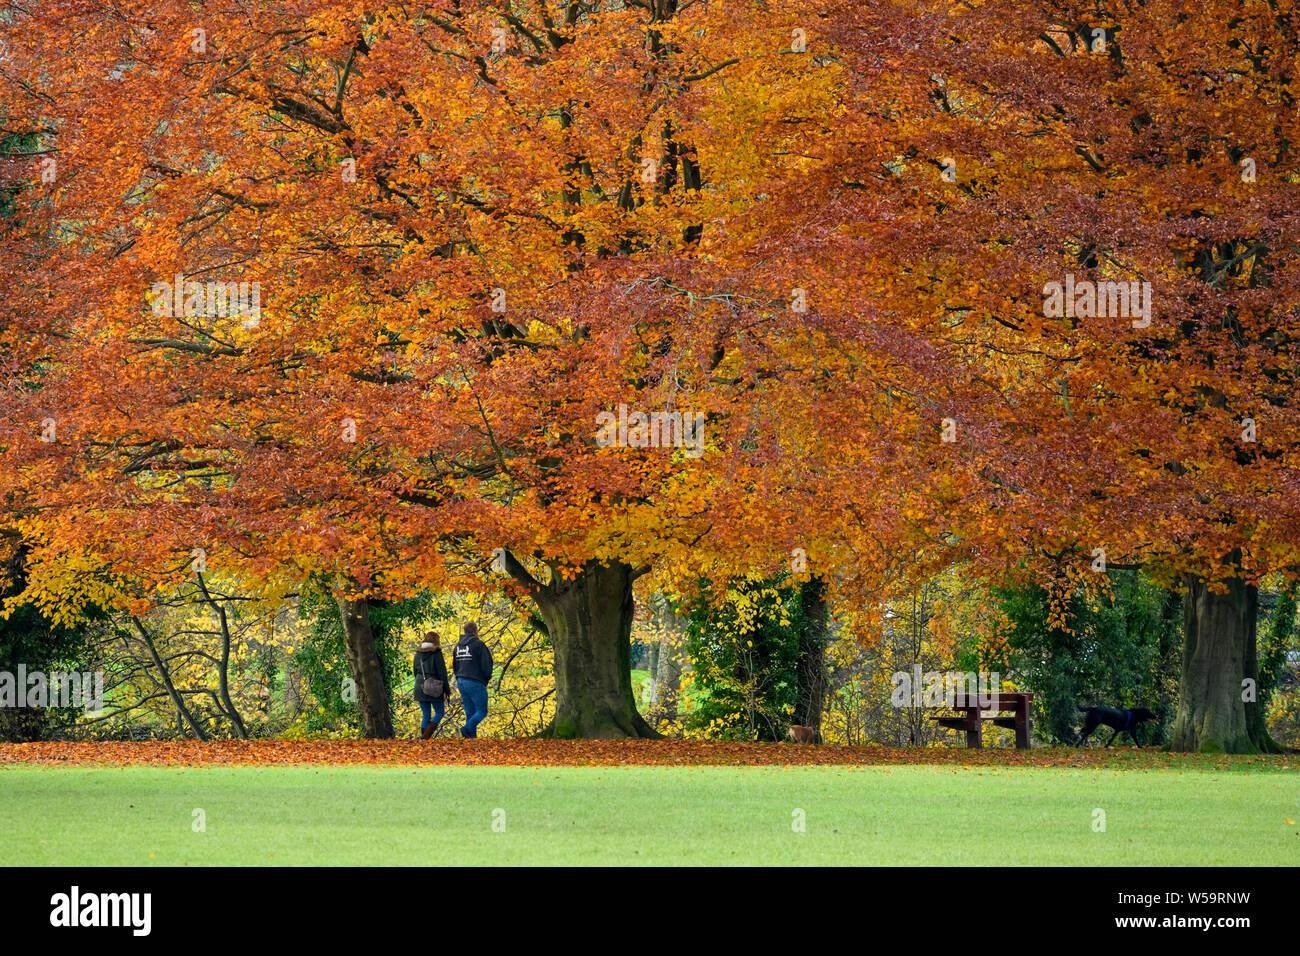 Couple walking dog sous d'énormes hêtres, la diffusion de l'affichage des couleurs d'automne - Scenic Park Crescent, Ilkley, West Yorkshire, Angleterre, Royaume-Uni. Banque D'Images